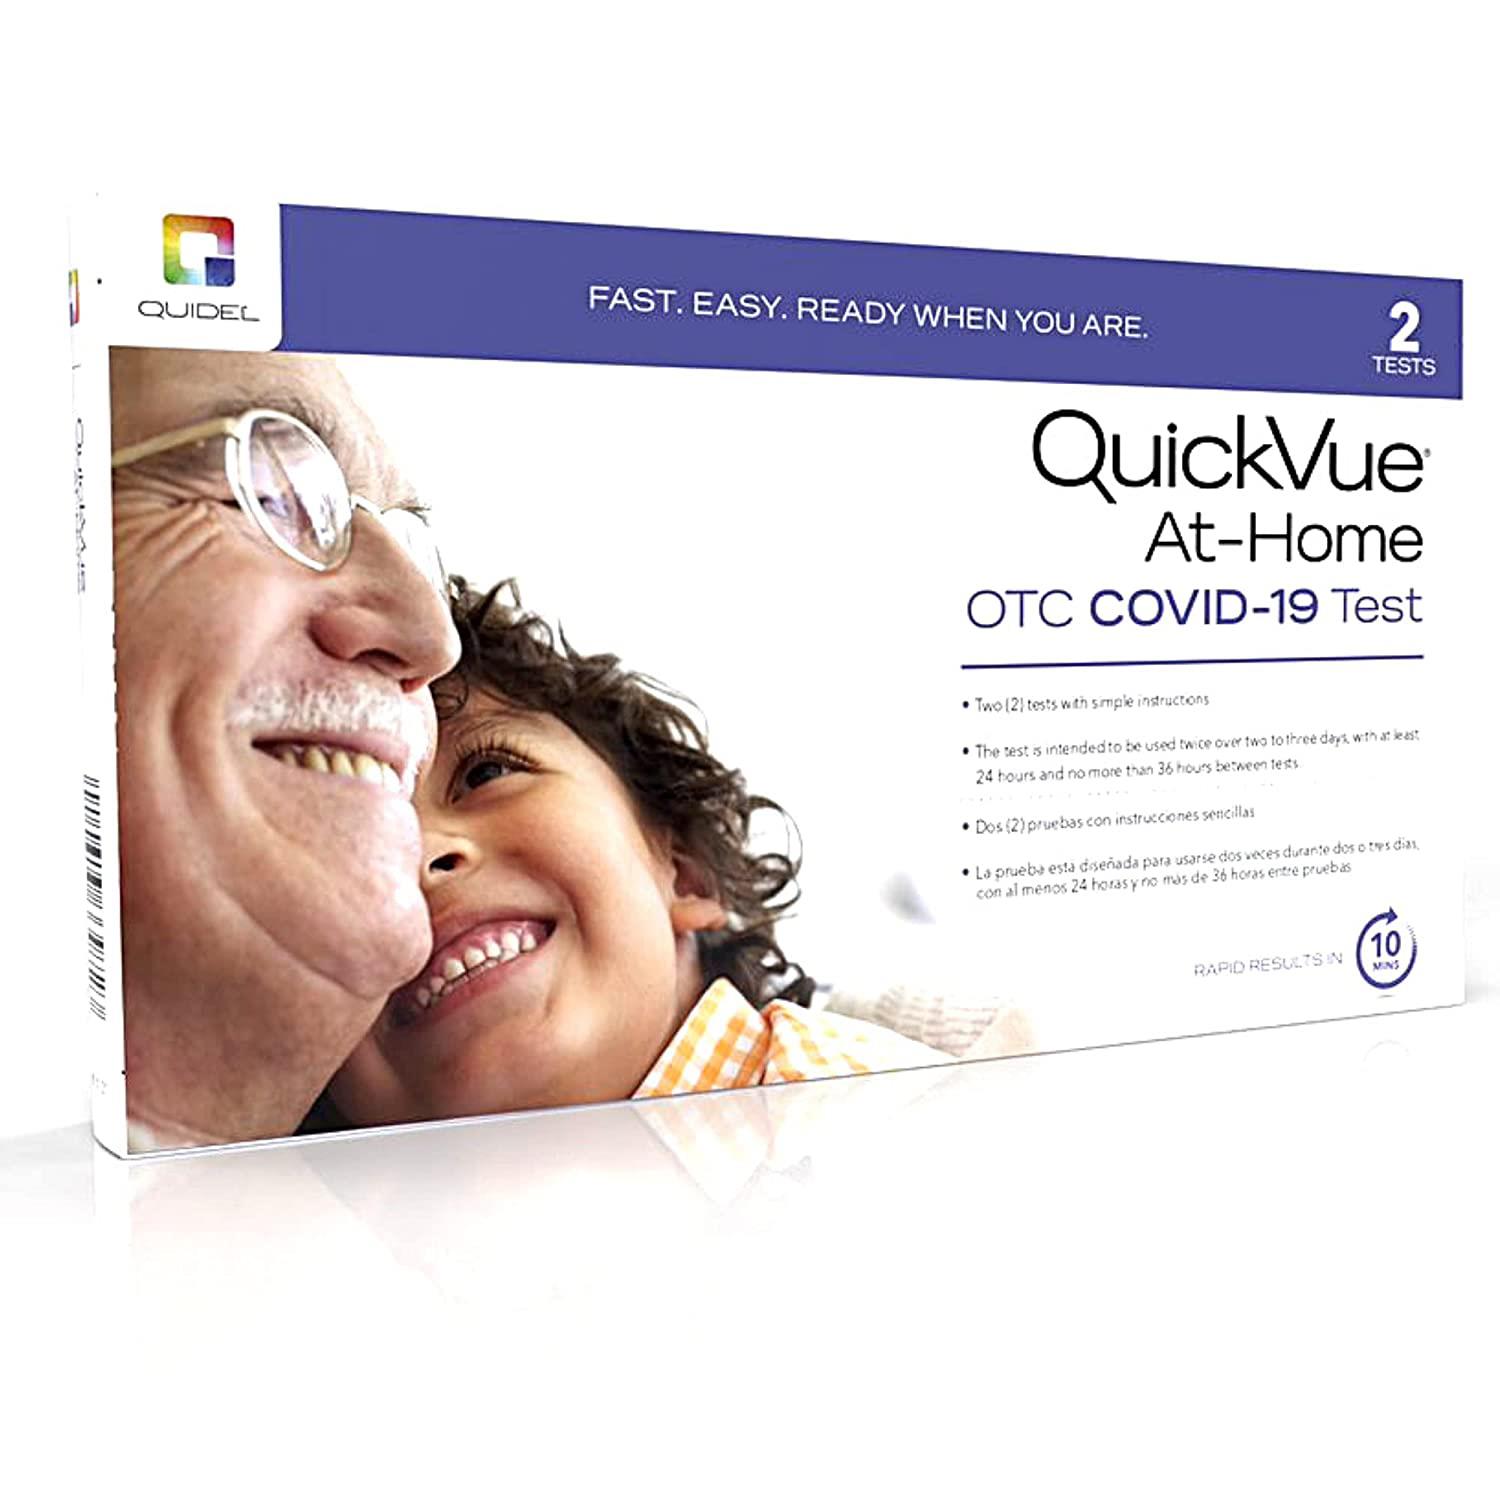 Quidel QuickVue At-Home OTC COVID-19 Test Kit